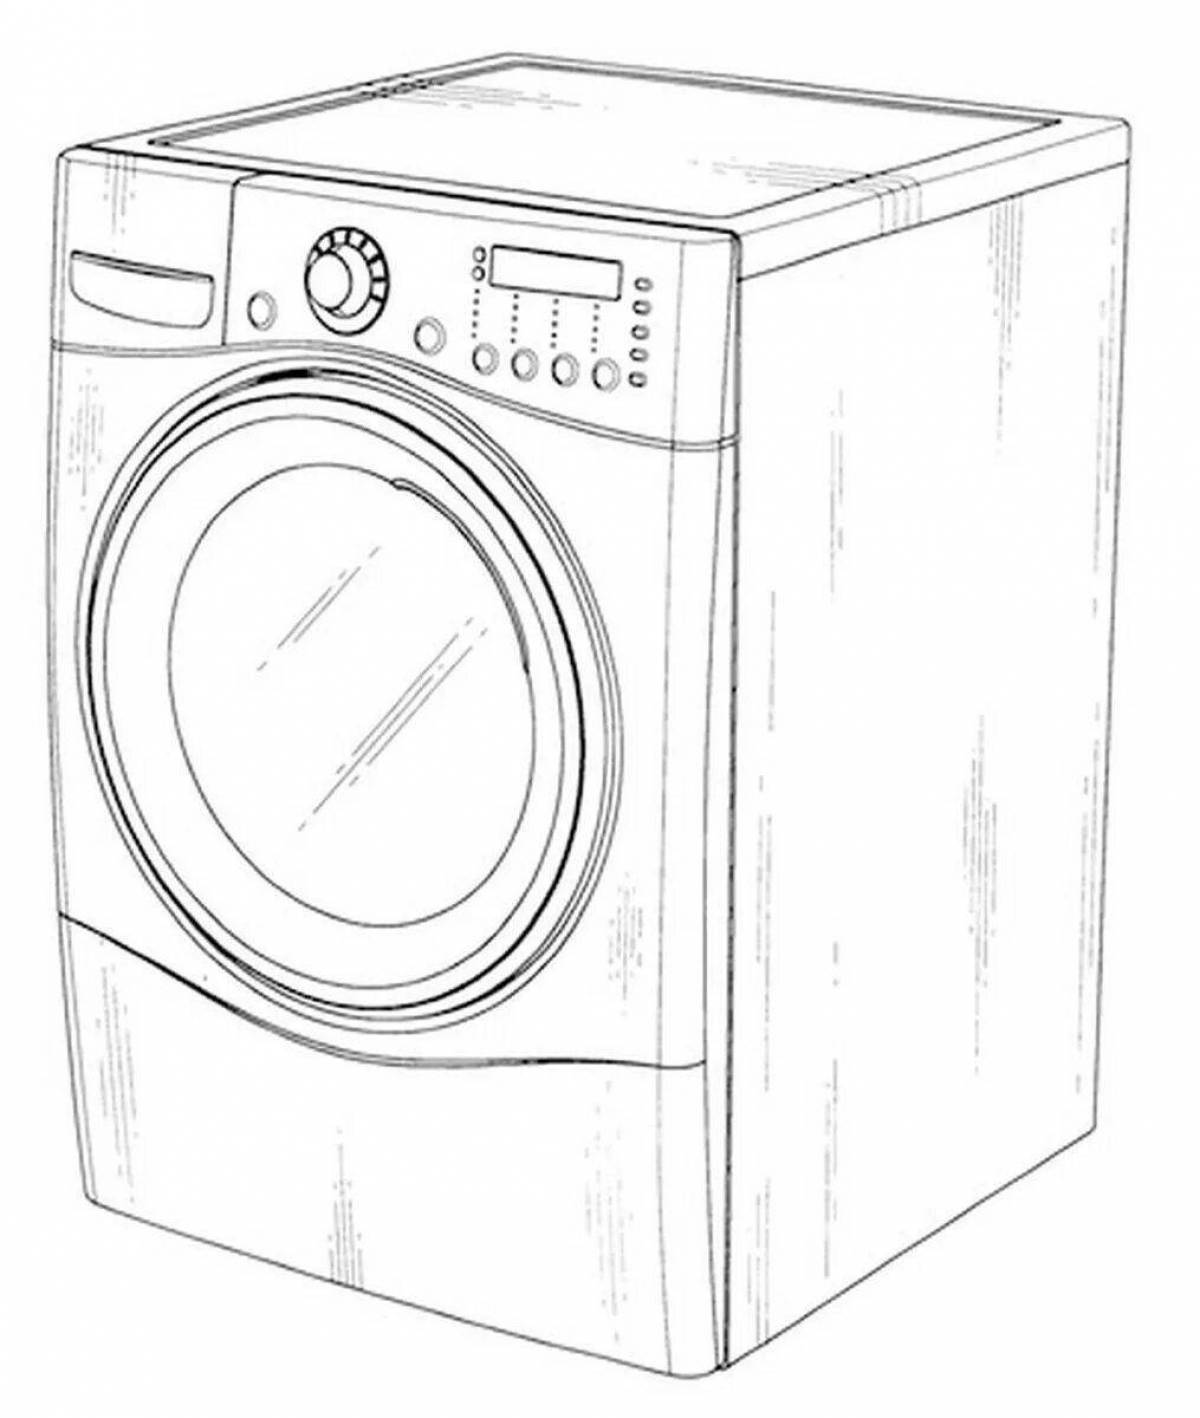 Coloring page stylish washing machine